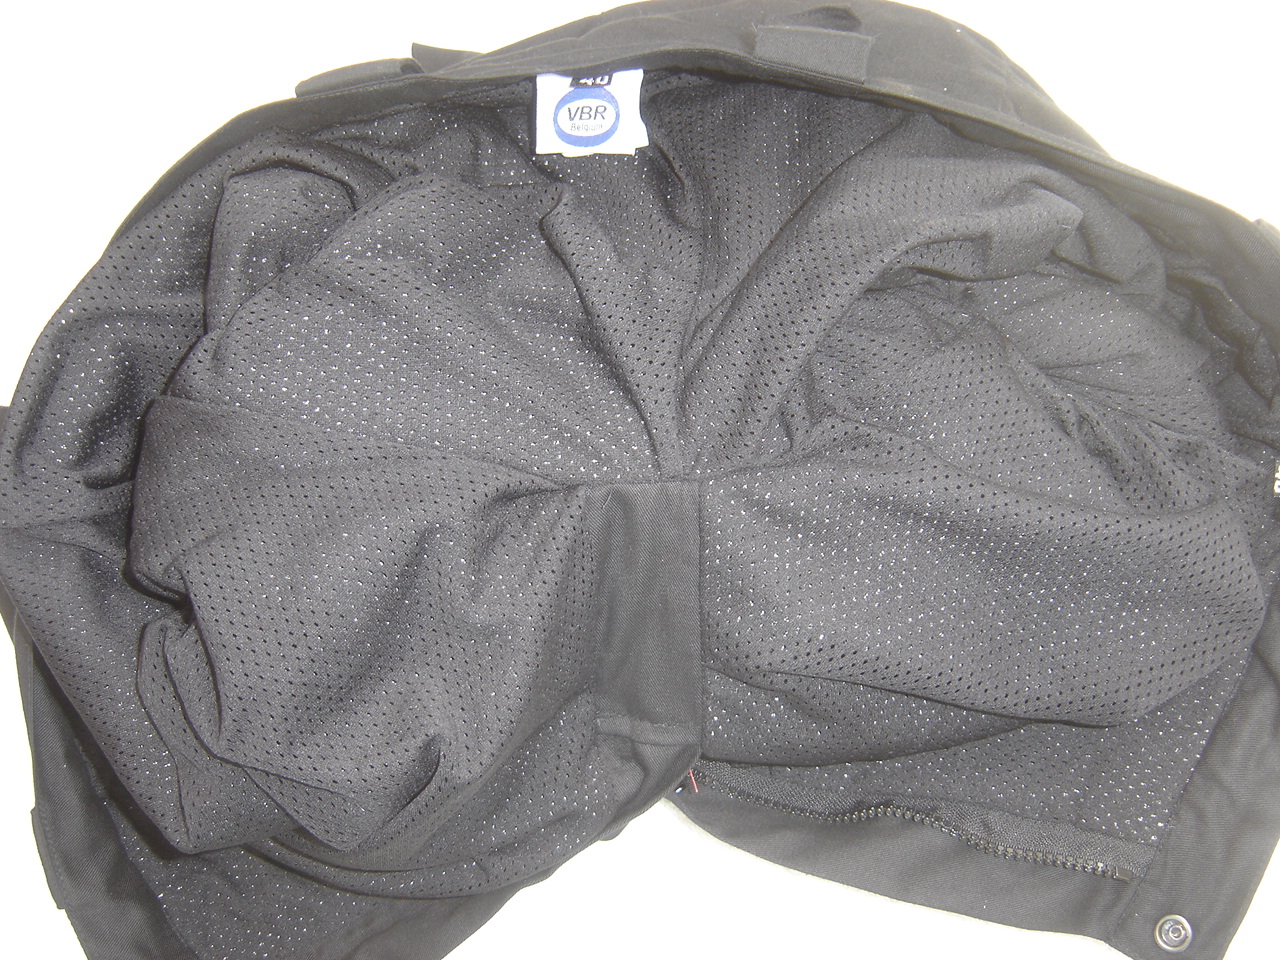 Cut resistant Combat pants / Water-repellent Cotton-Cutyarn / Black VBR-Belgium